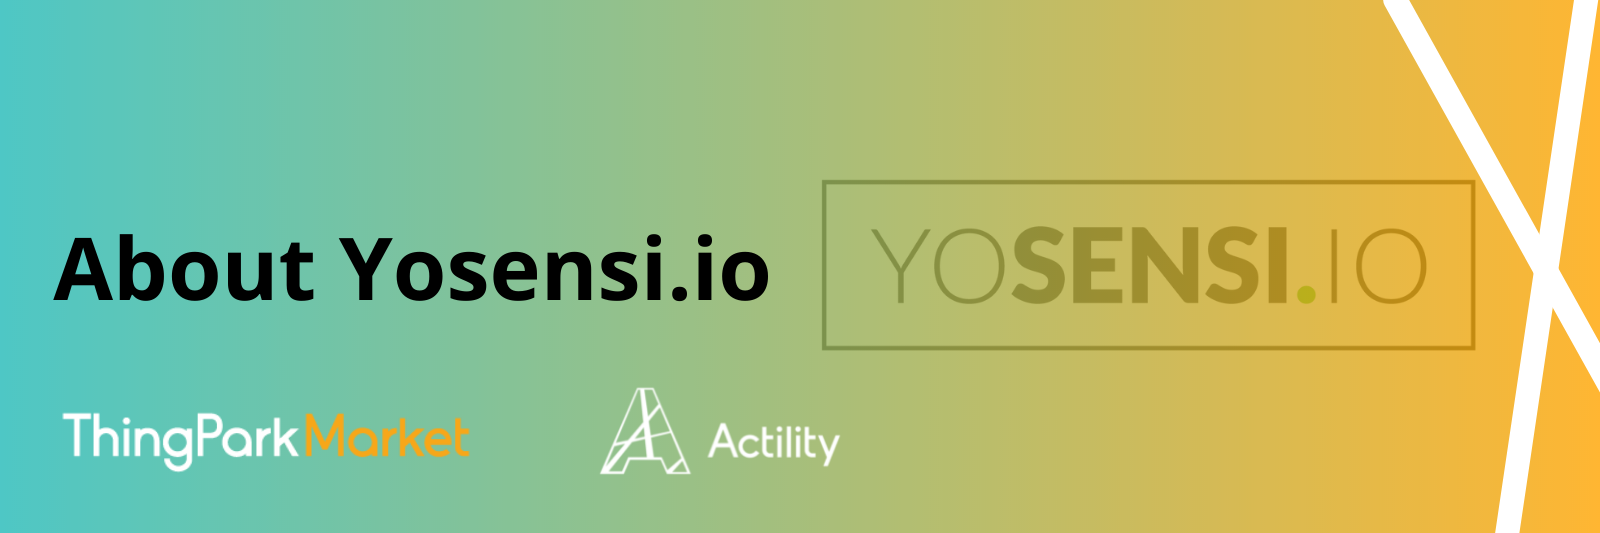 About Yosensi